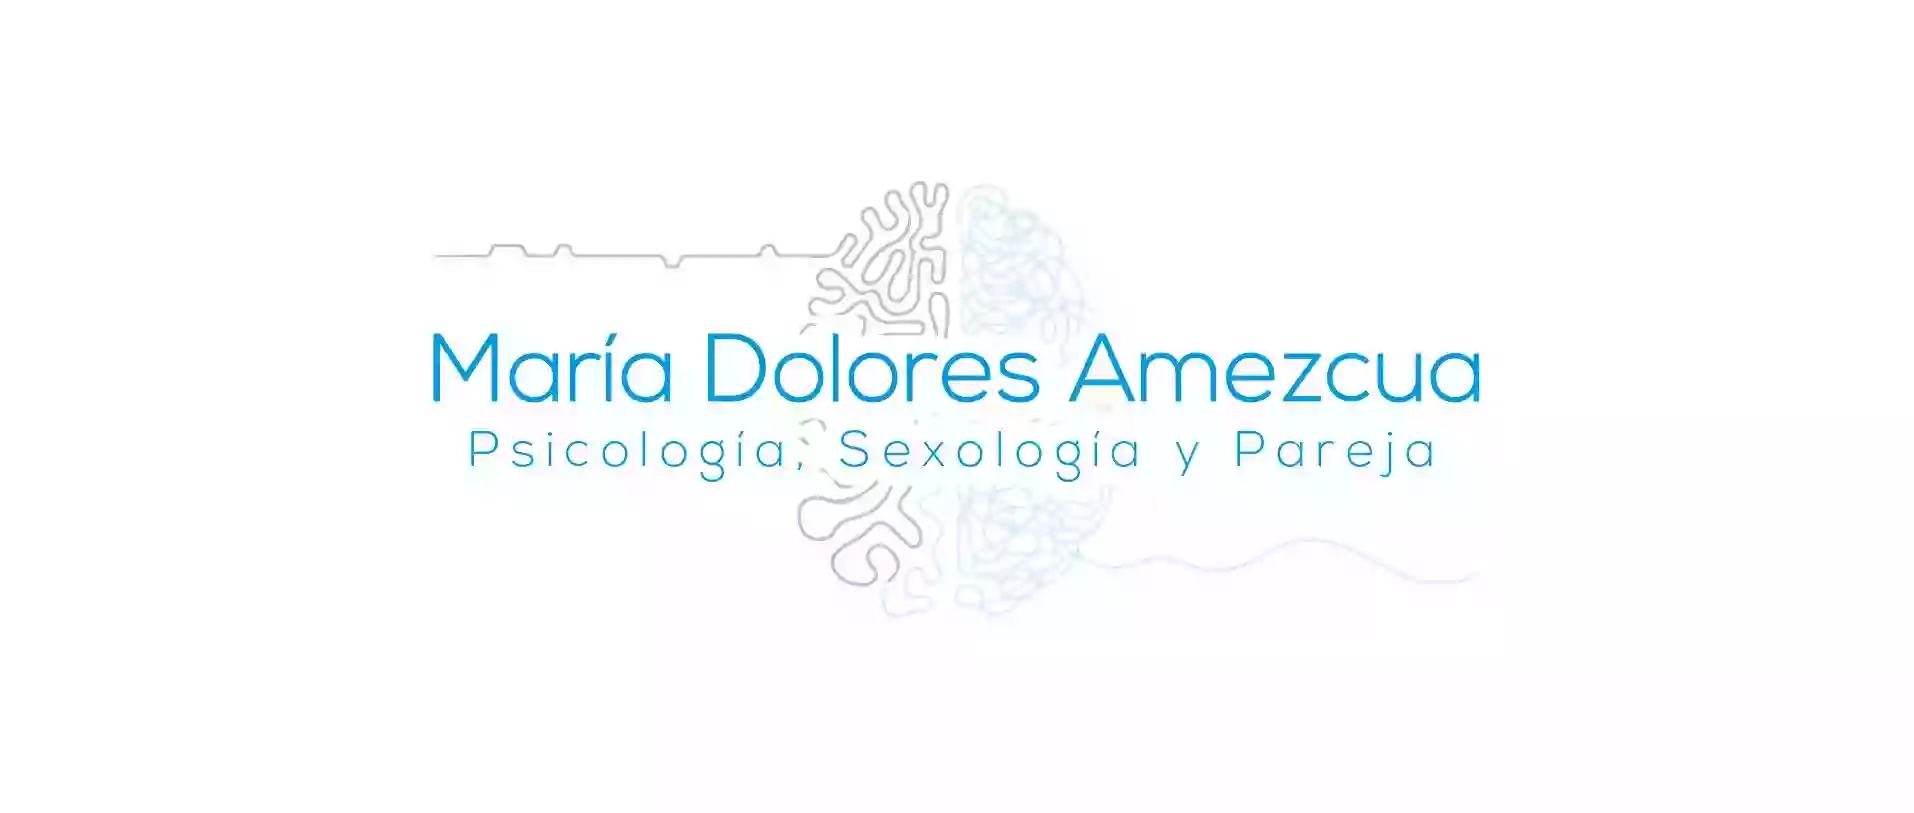 María Dolores Amezcua Psicología, Sexología y Pareja